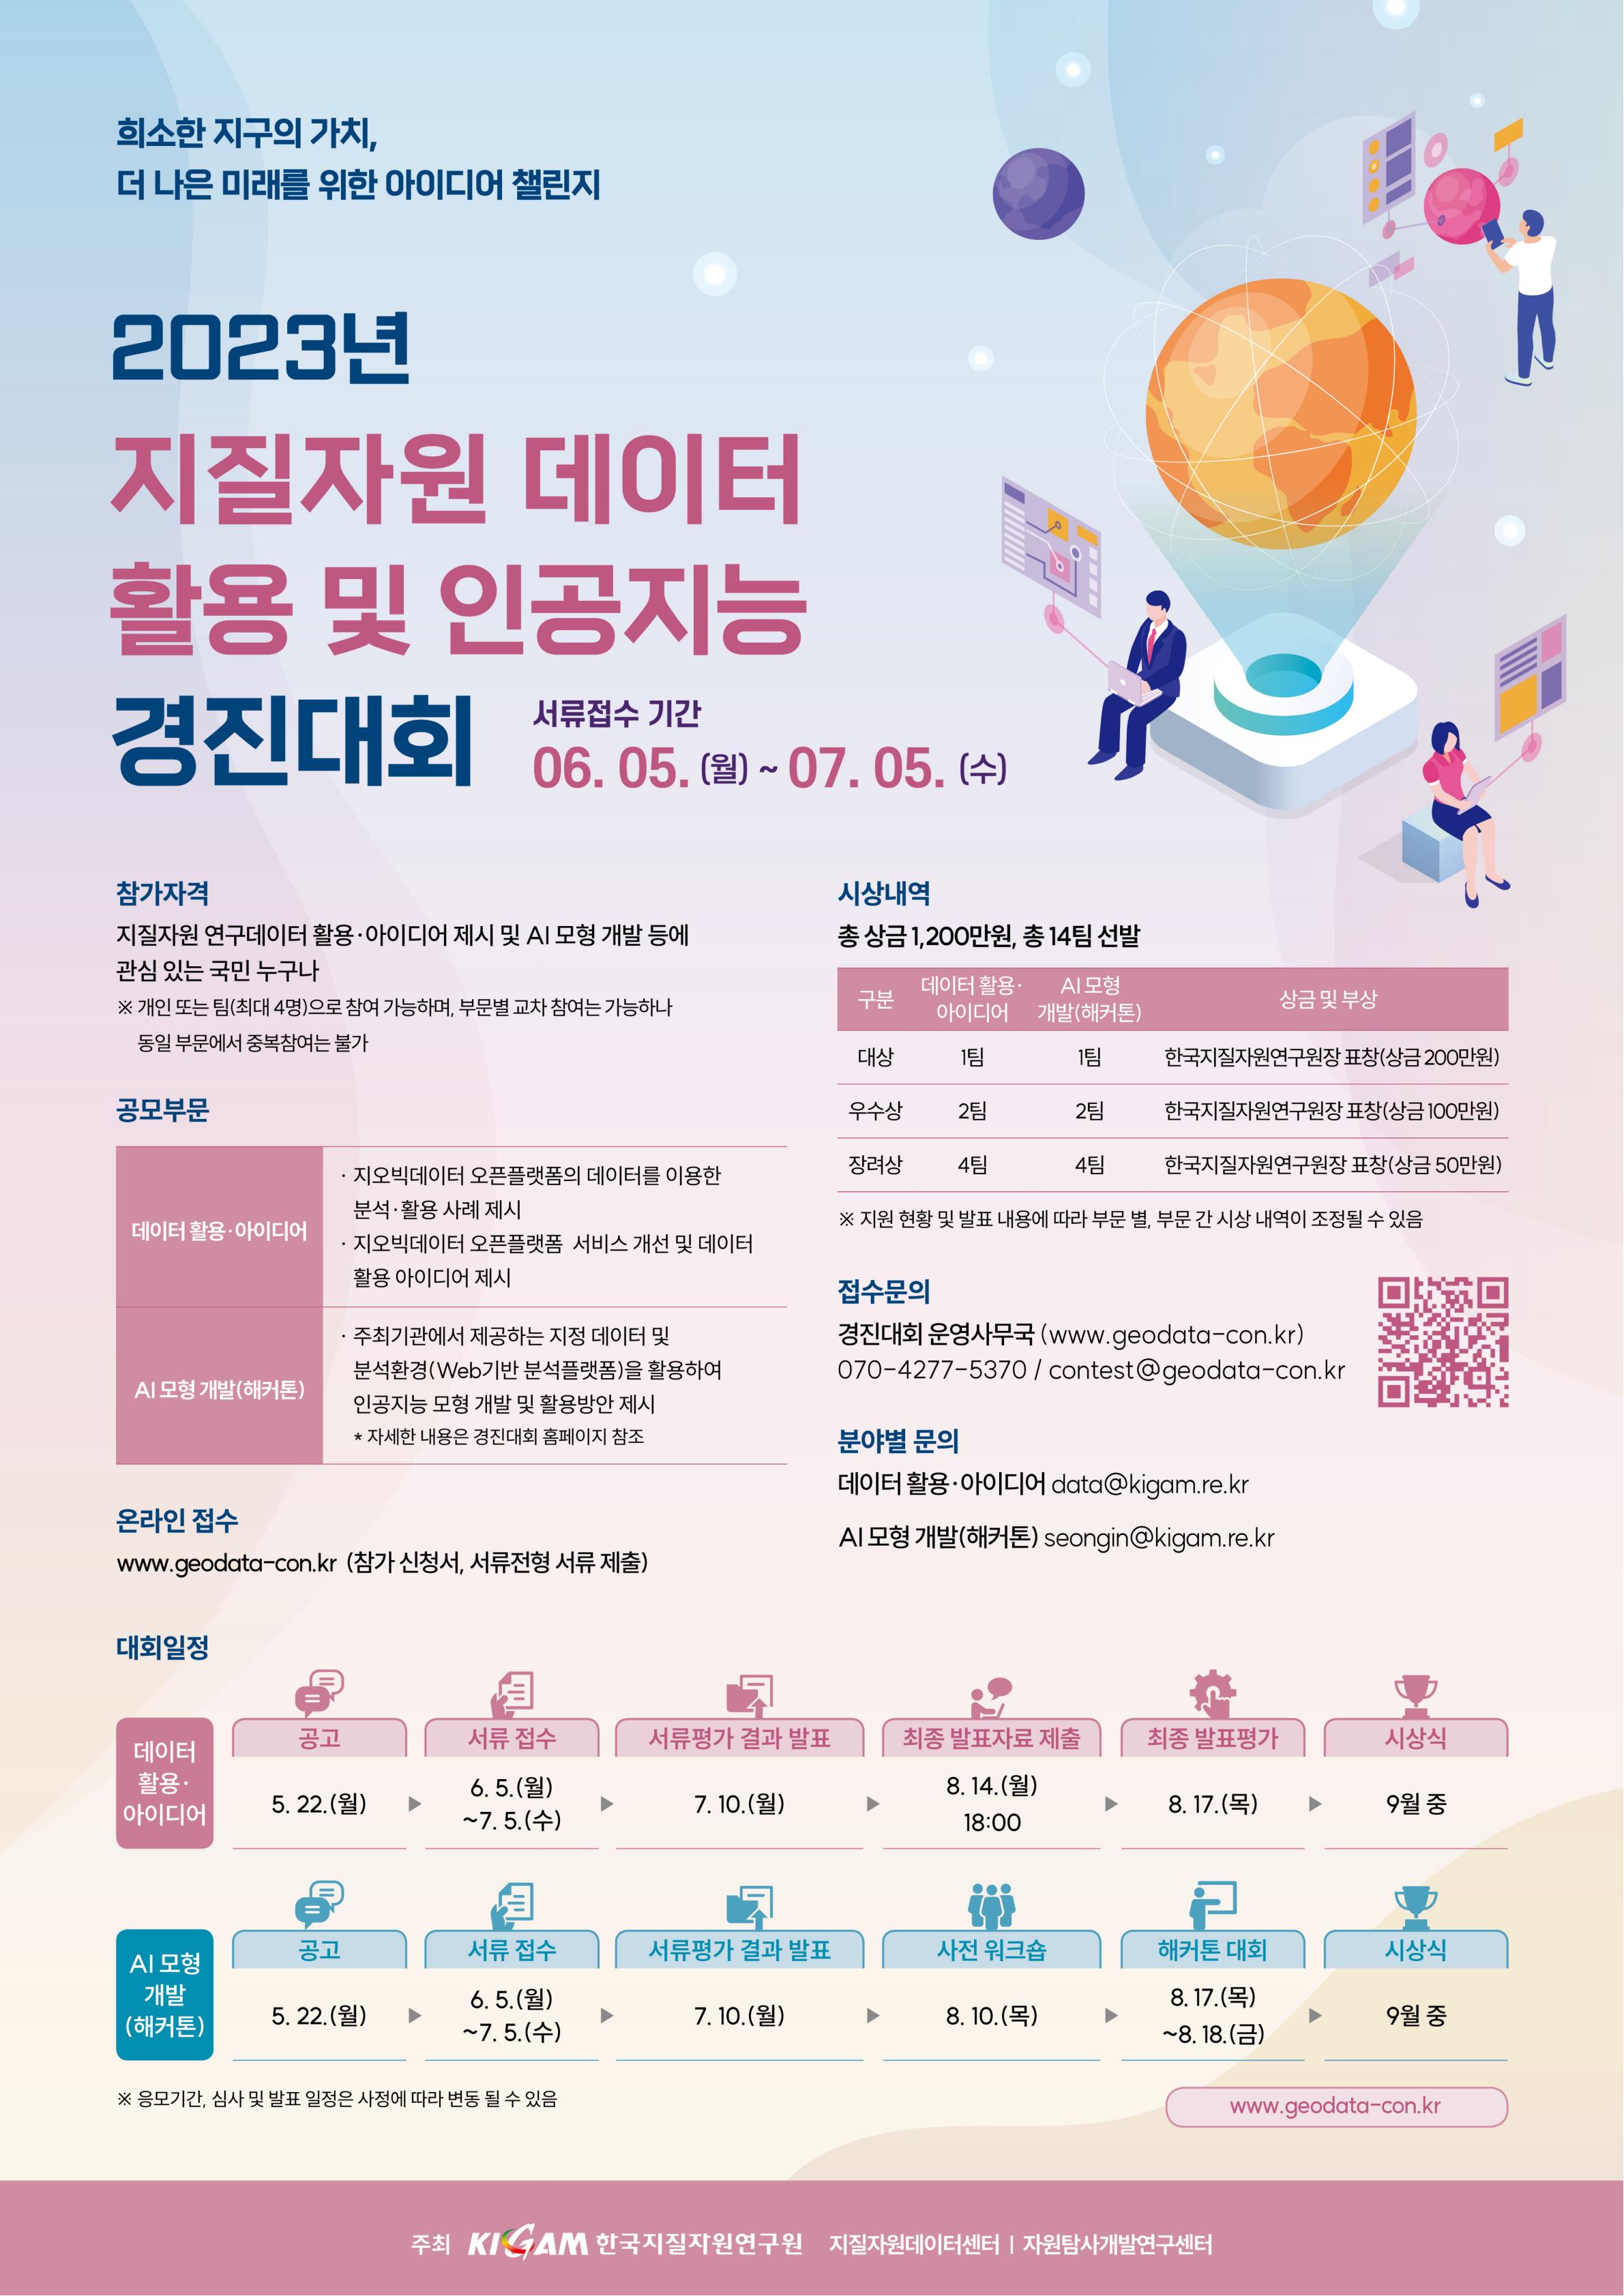 2023년 지질자원데이터 활용 및 인공지능 경진대회 포스터